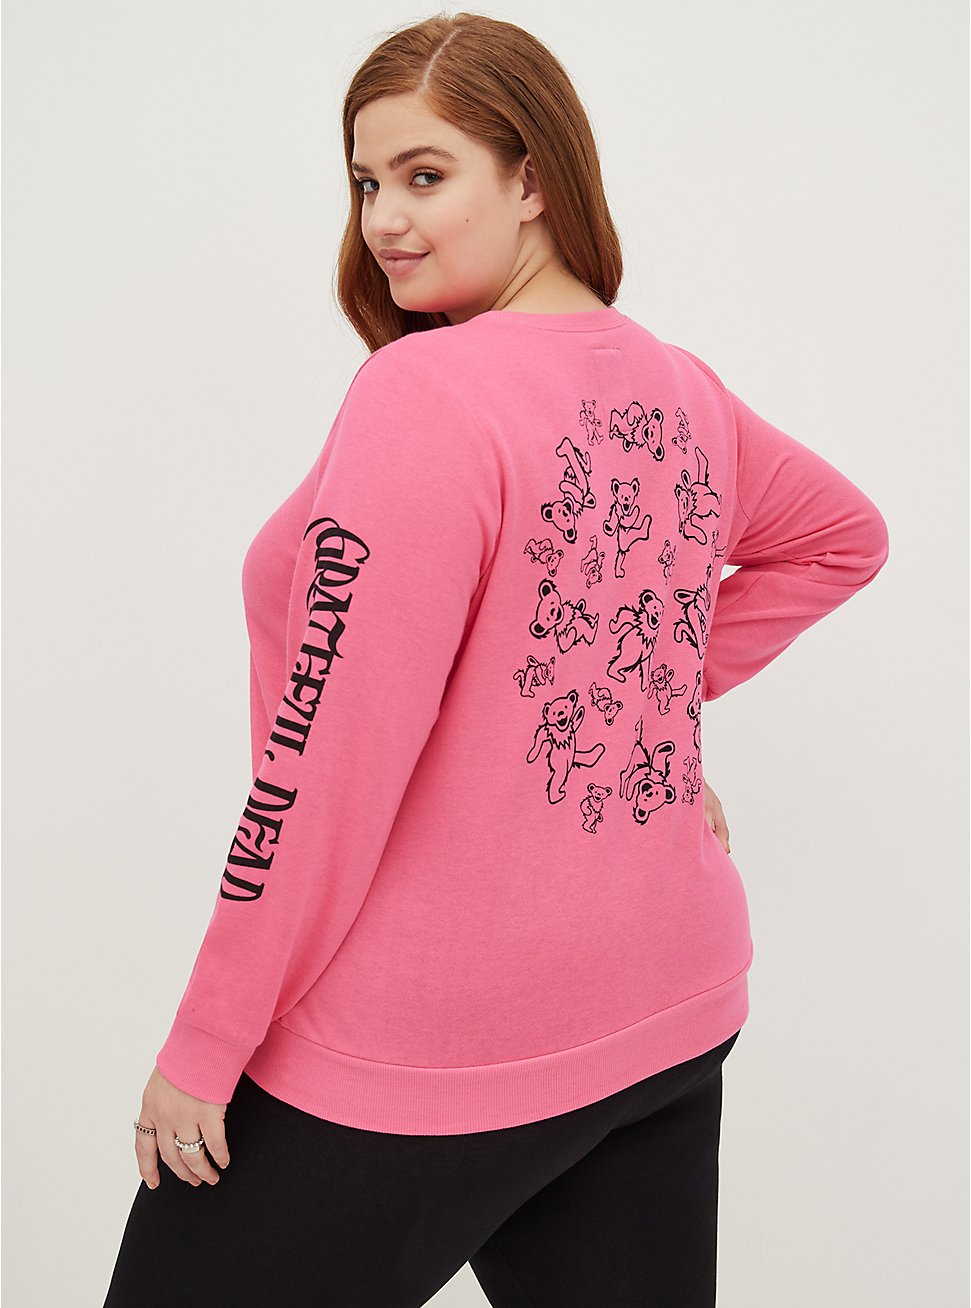 Sweatshirt - Cozy Fleece Grateful Dead Bear Pink, PINK, hi-res